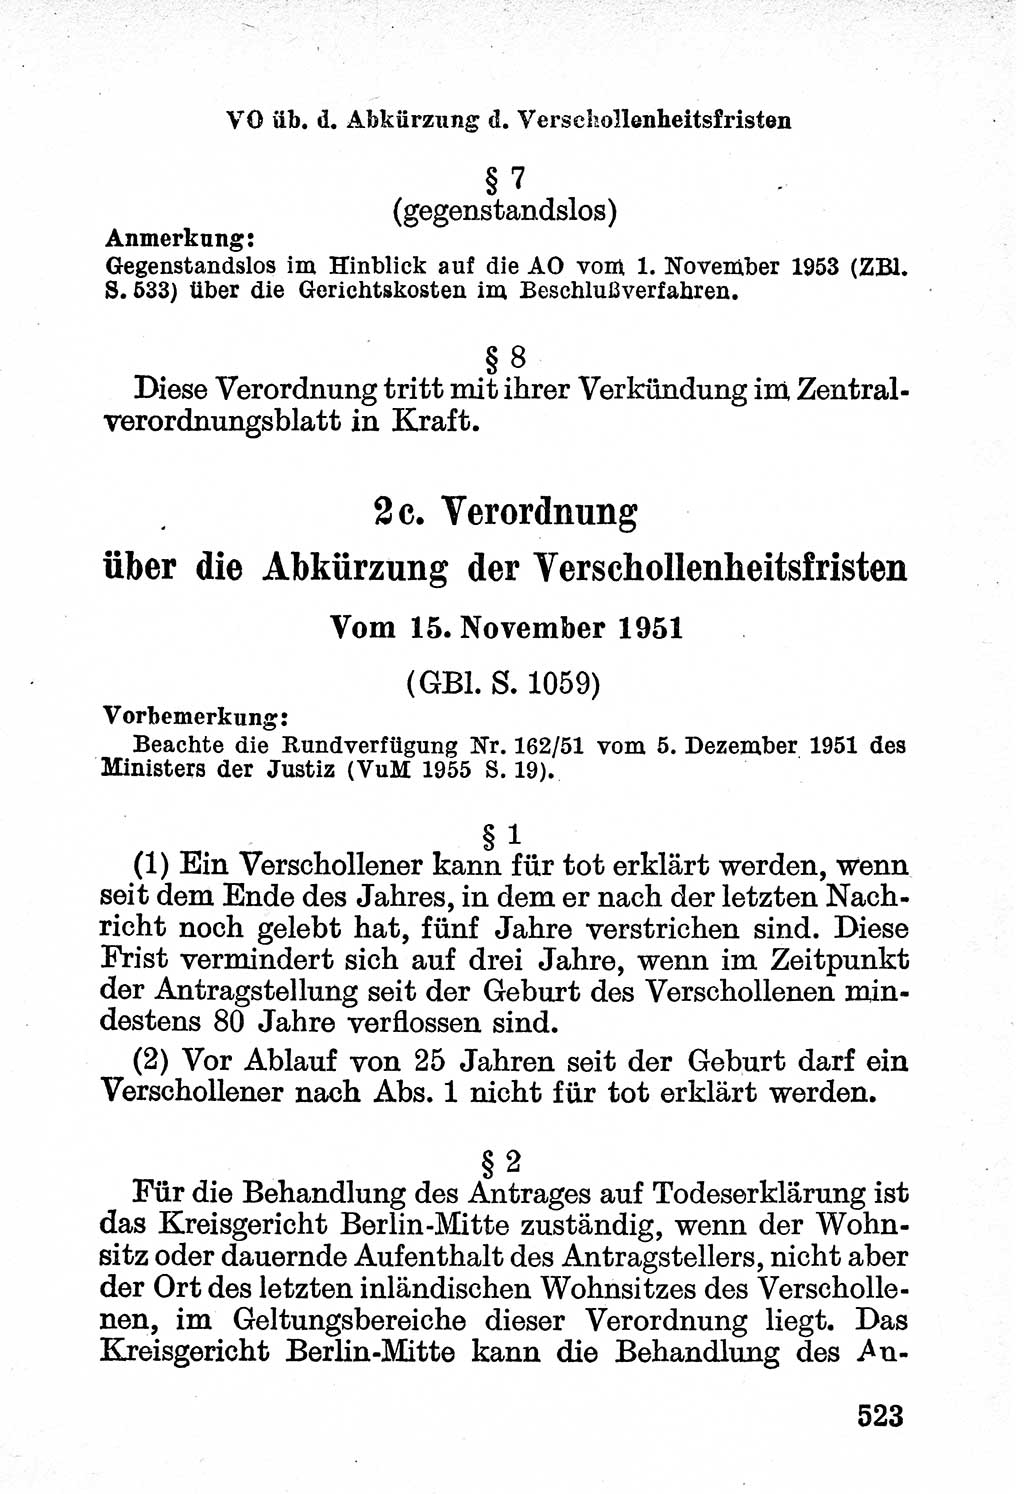 Bürgerliches Gesetzbuch (BGB) nebst wichtigen Nebengesetzen [Deutsche Demokratische Republik (DDR)] 1956, Seite 523 (BGB Nebenges. DDR 1956, S. 523)